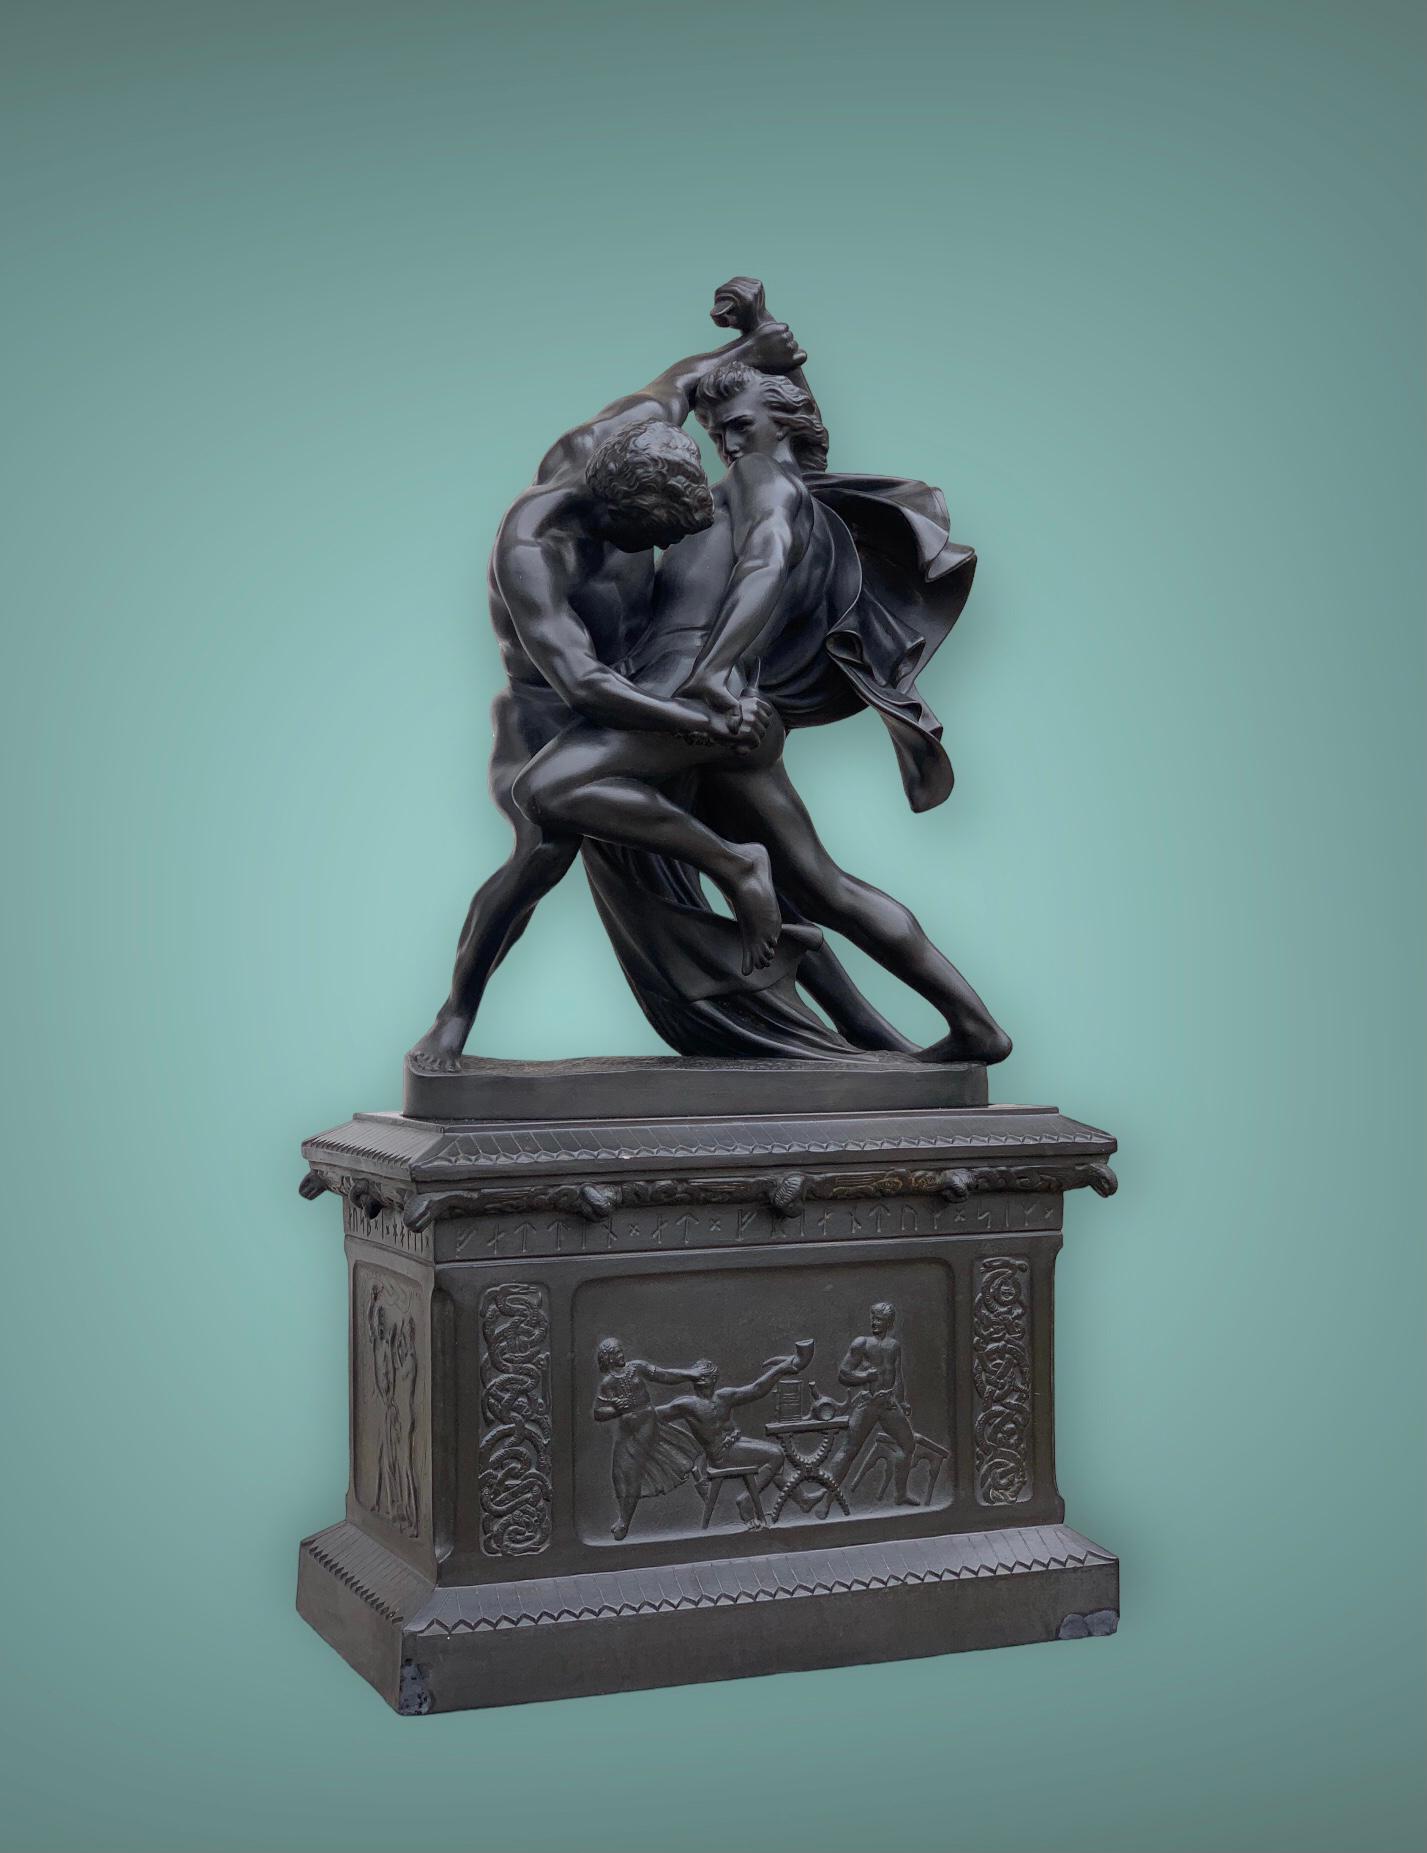 Figurative Sculpture Johan Peter Molin - Wrestlers du couteau, d'après  La statue de J. P.  Molin, Stockholm 1867